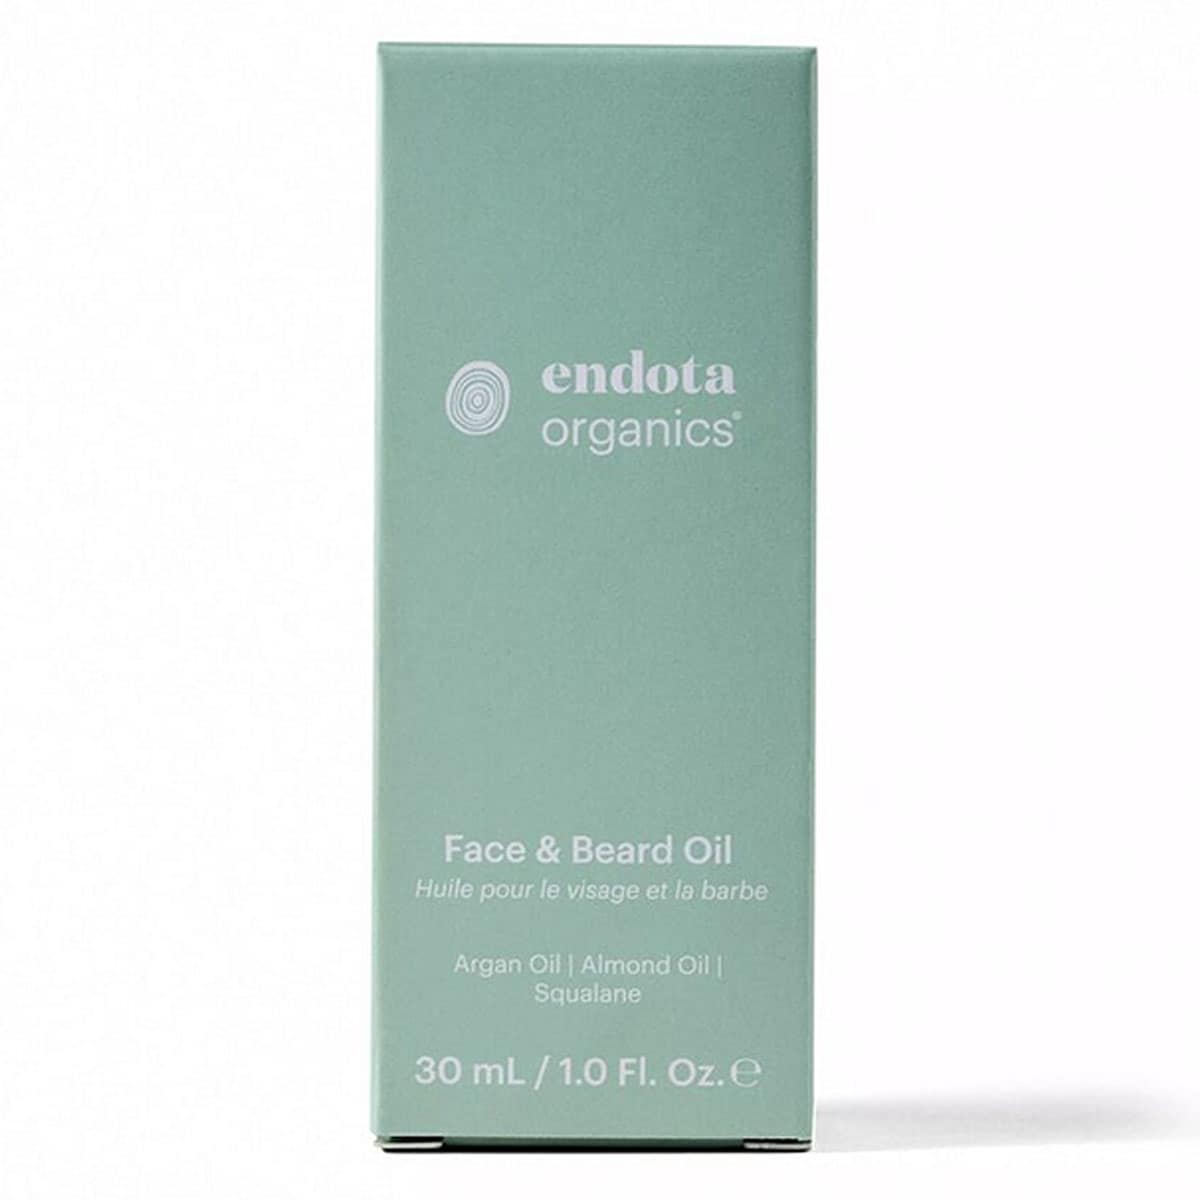 Endota Face & Beard Oil 30ml